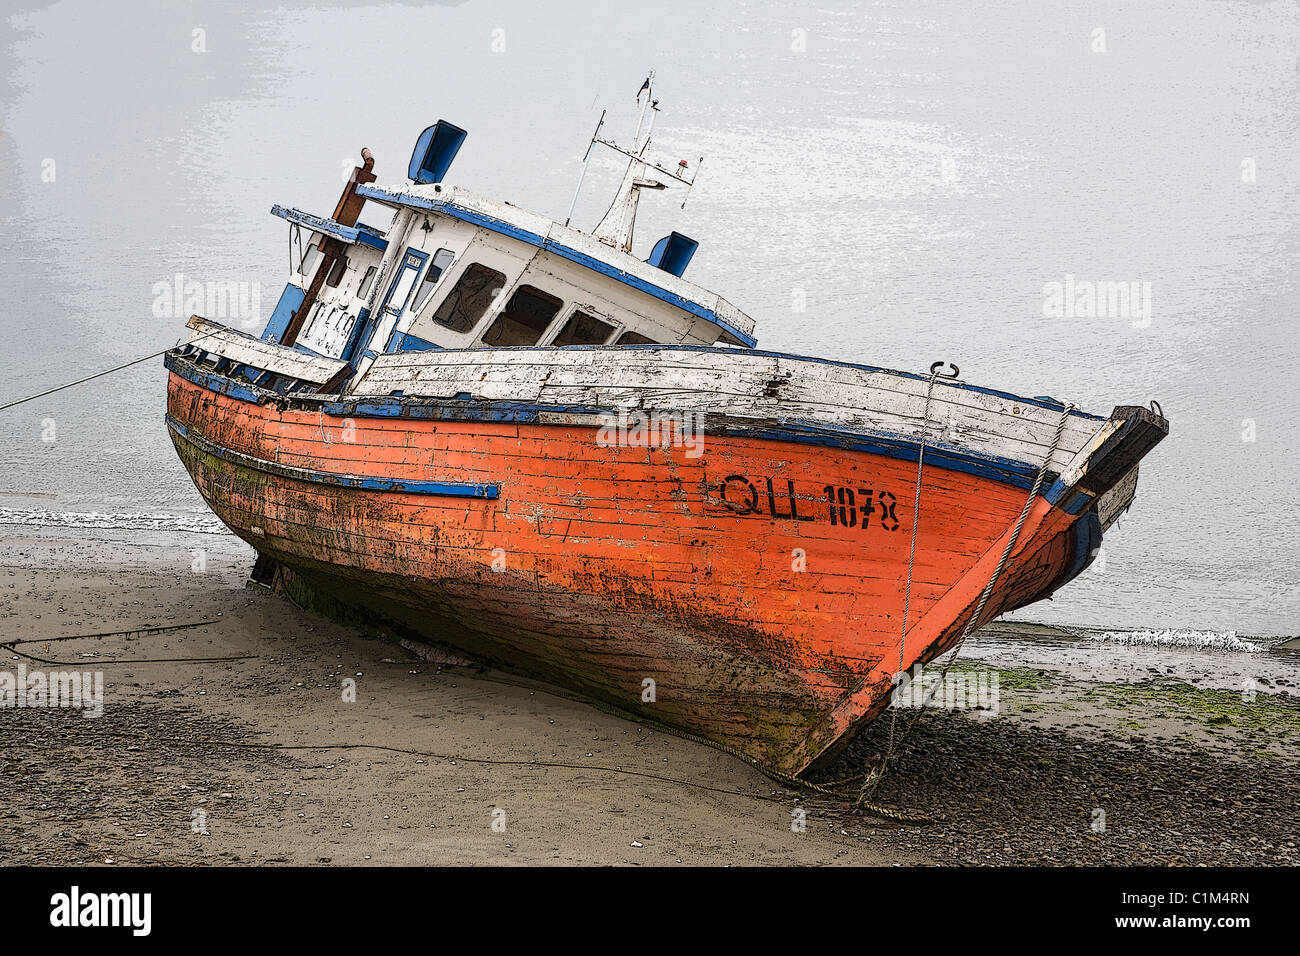 Chiloe Insel, Posterized Bild eines Strände Fischerboot, Chile Stockfoto